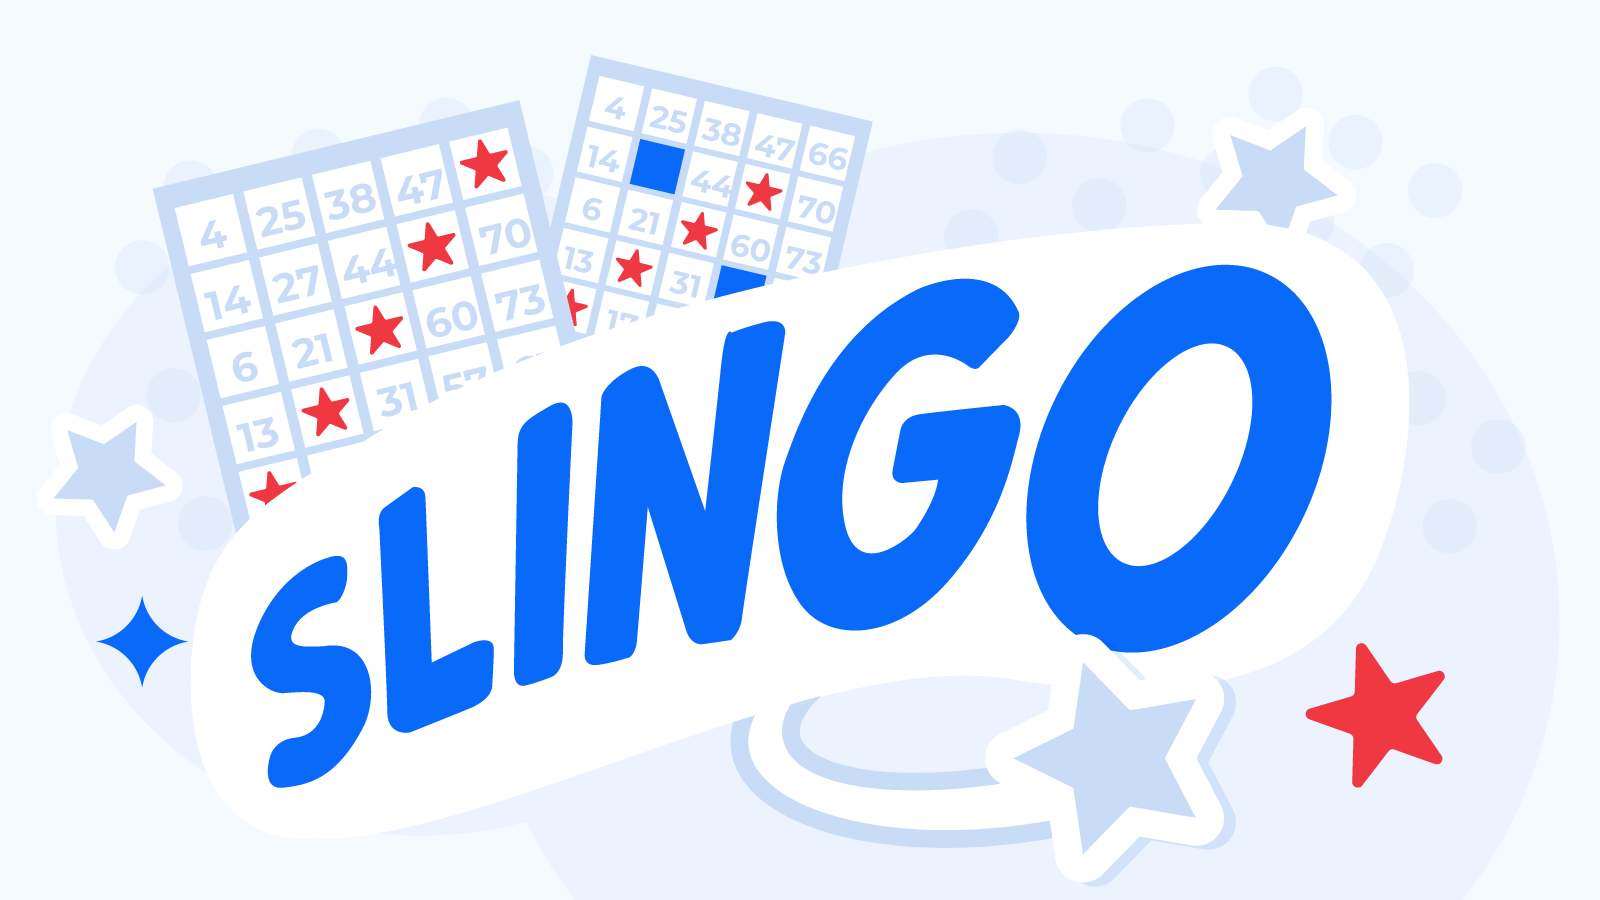 Ce Este Slingo Și Cum Se Joacă - Explicații Pentru Începători